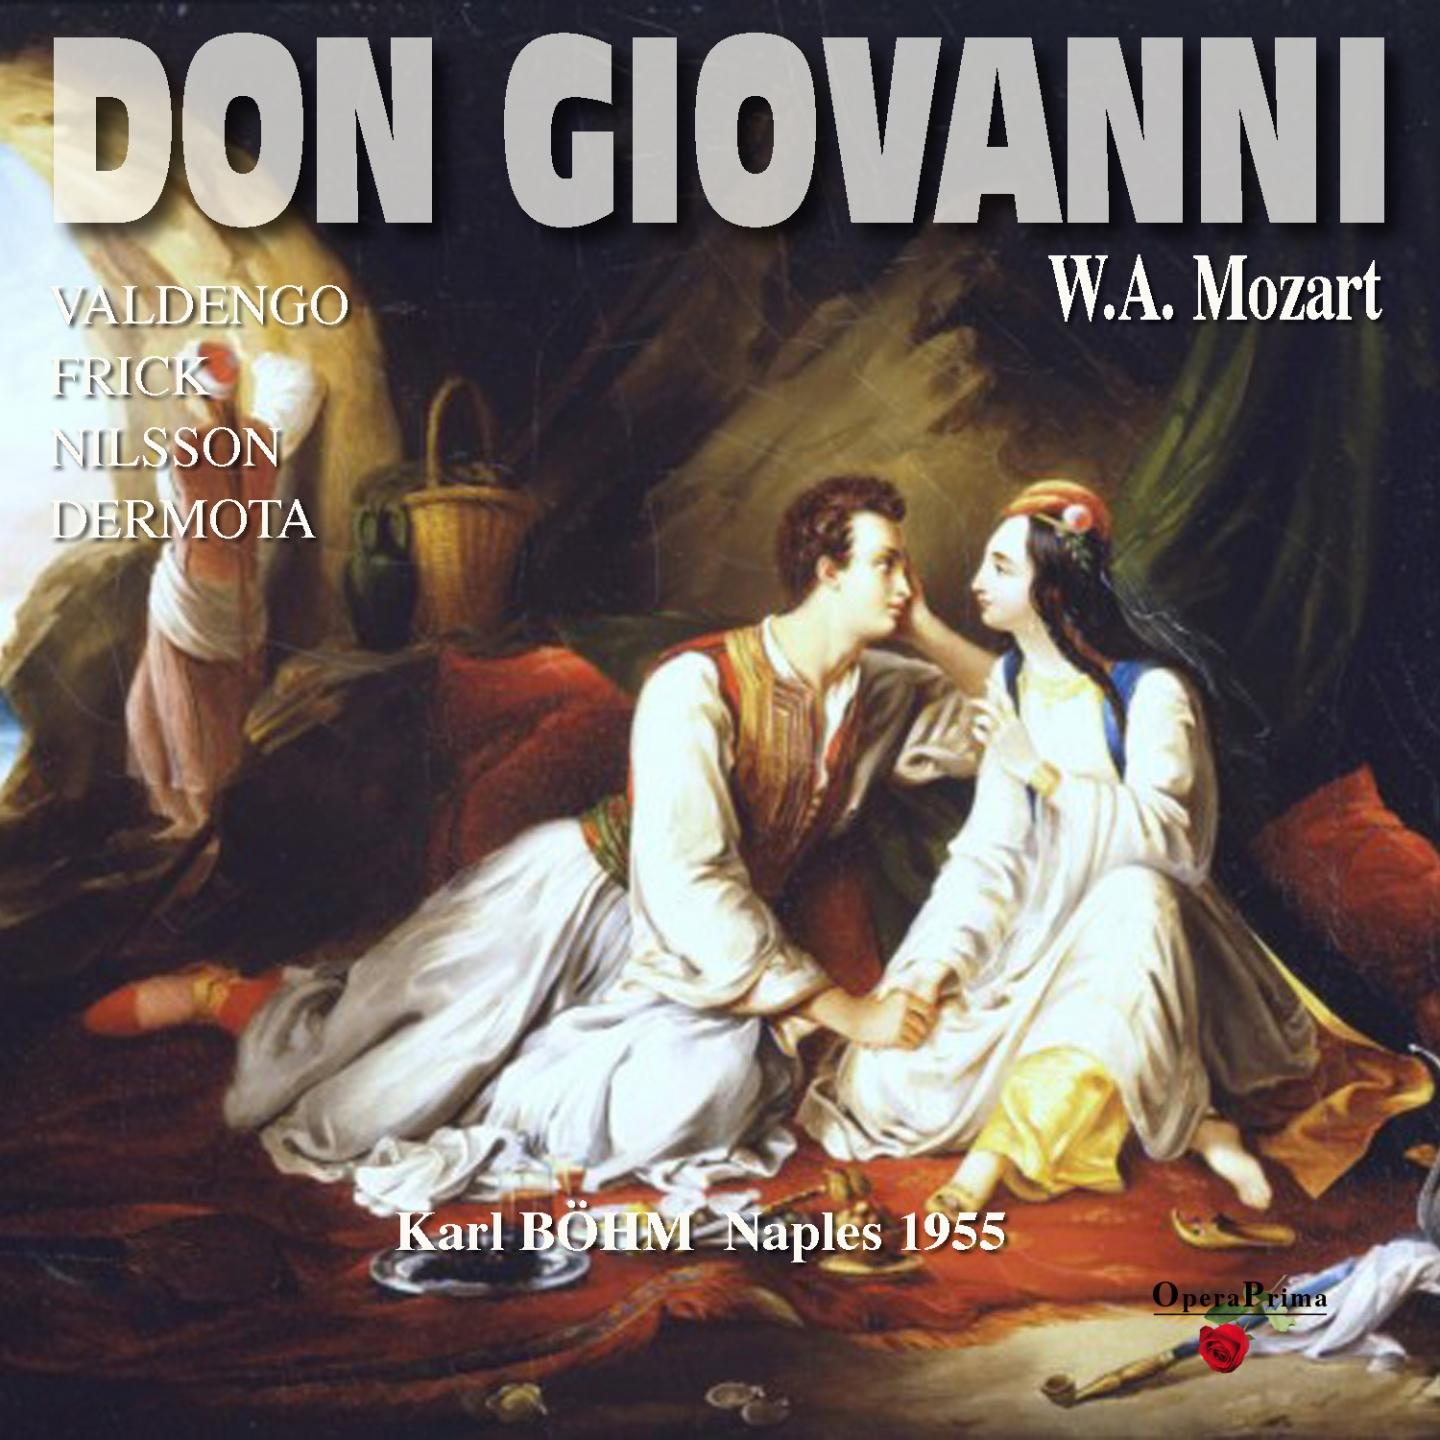 Don Giovanni: Act II - "In quali eccessi, o numi"